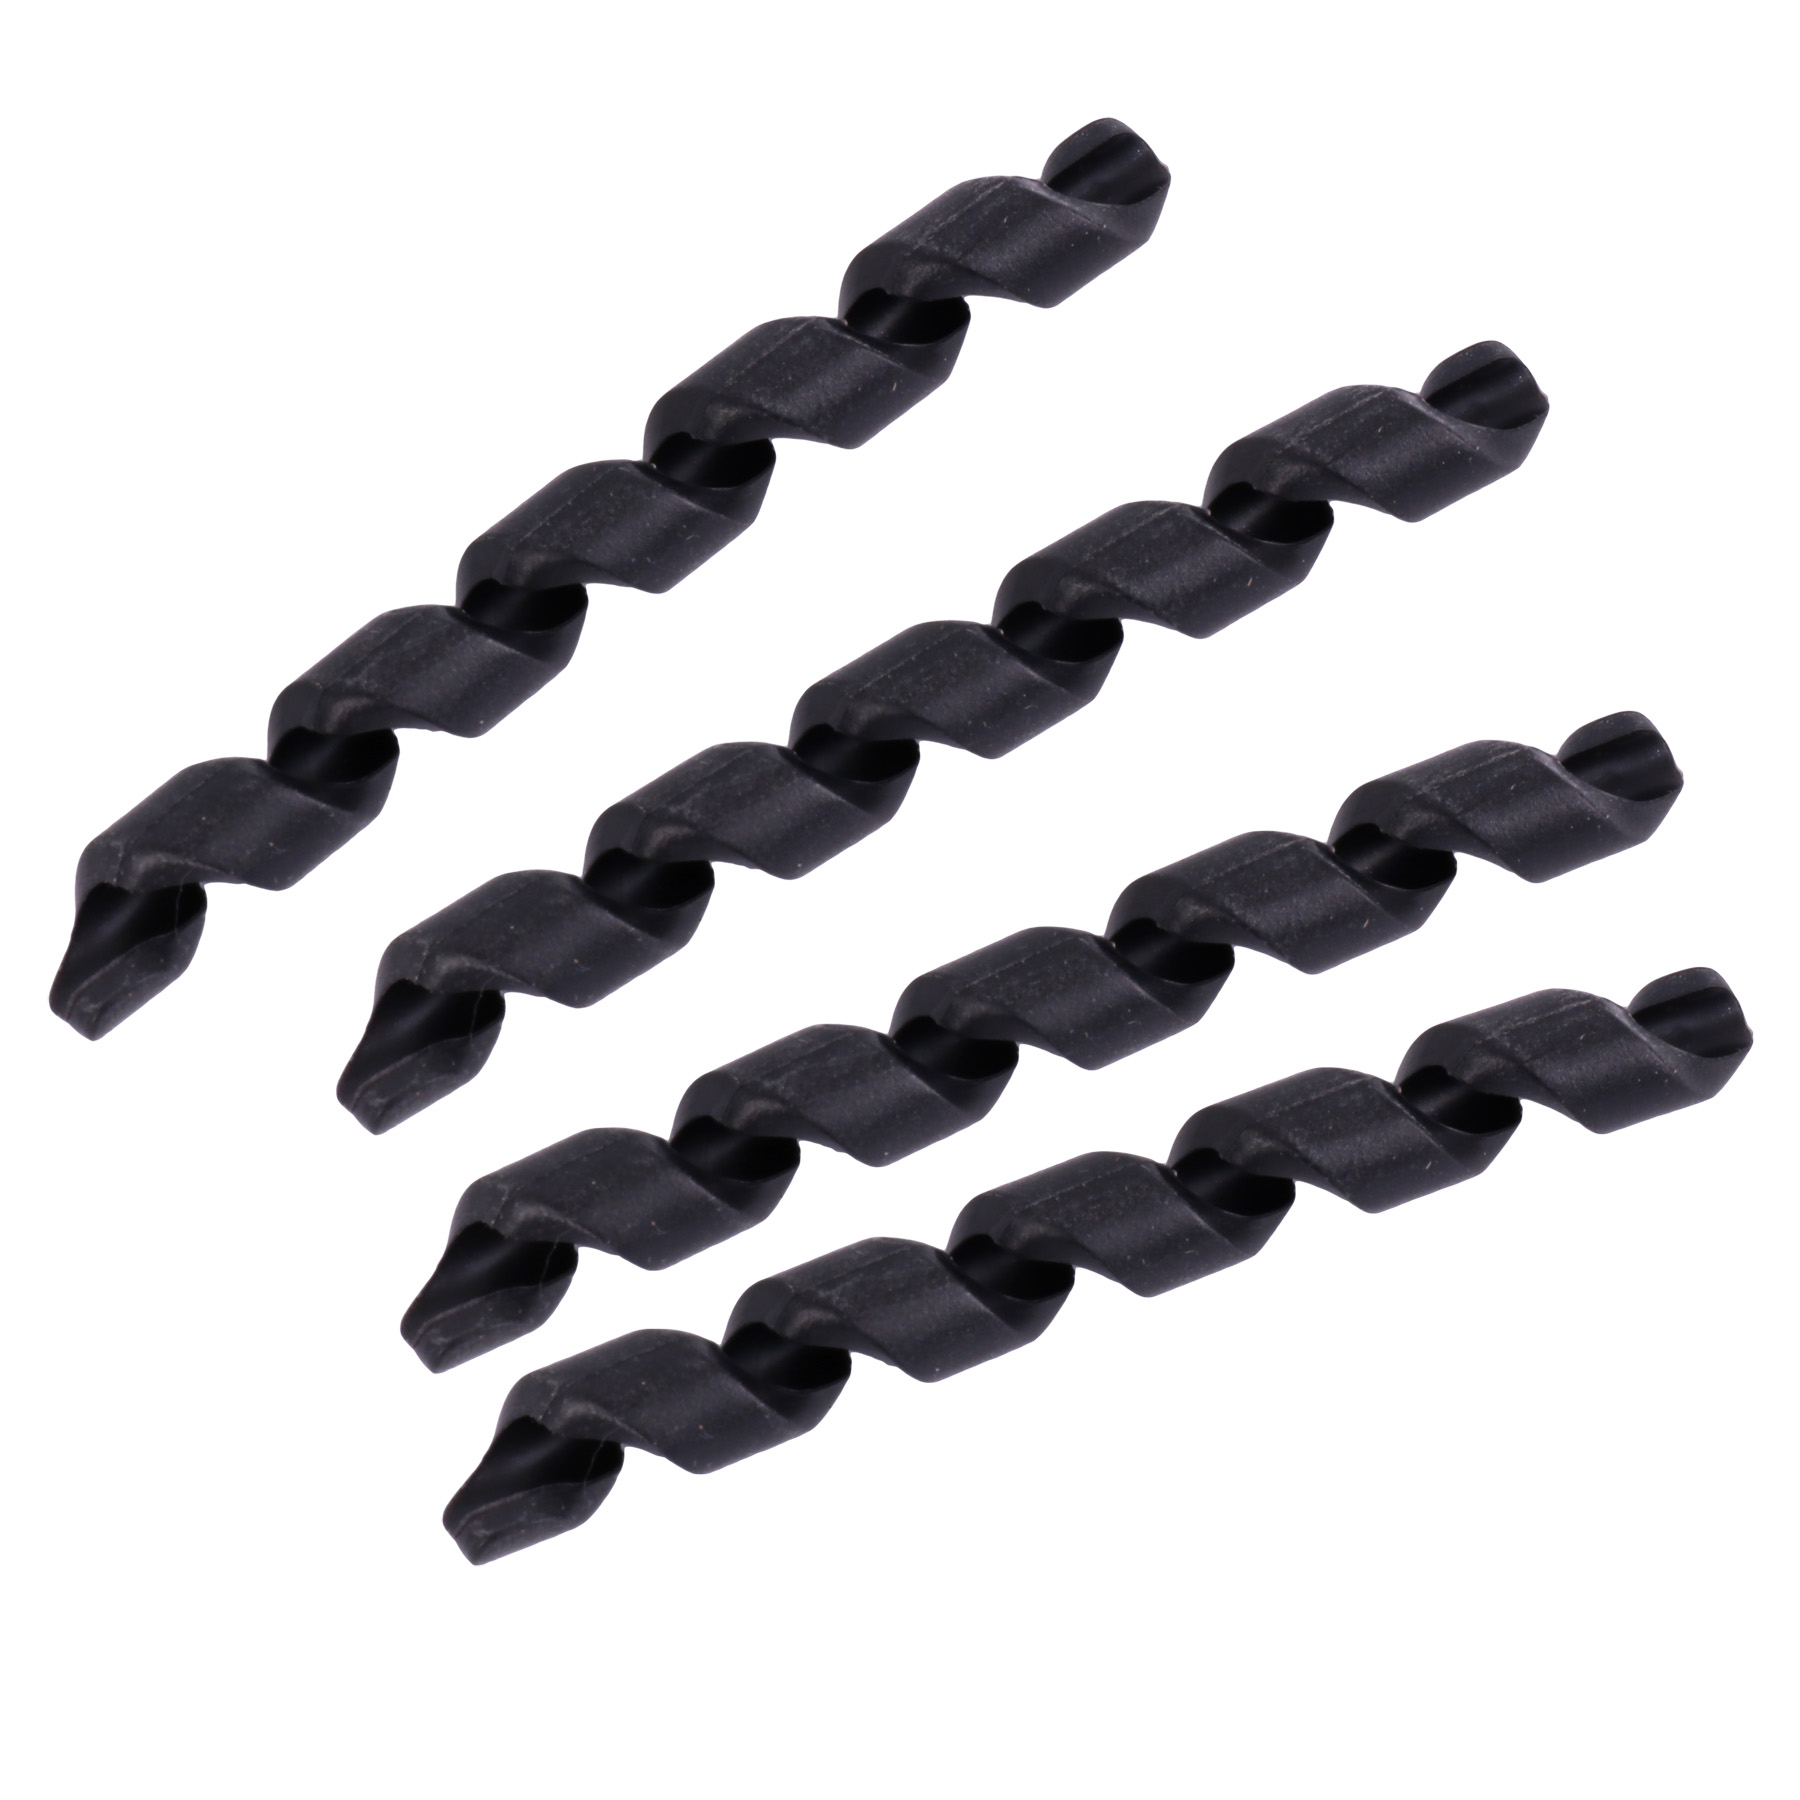 Produktbild von Birzman Tube Tops Spiral Housing Covers Rahmenschützer (4 Stück) - schwarz